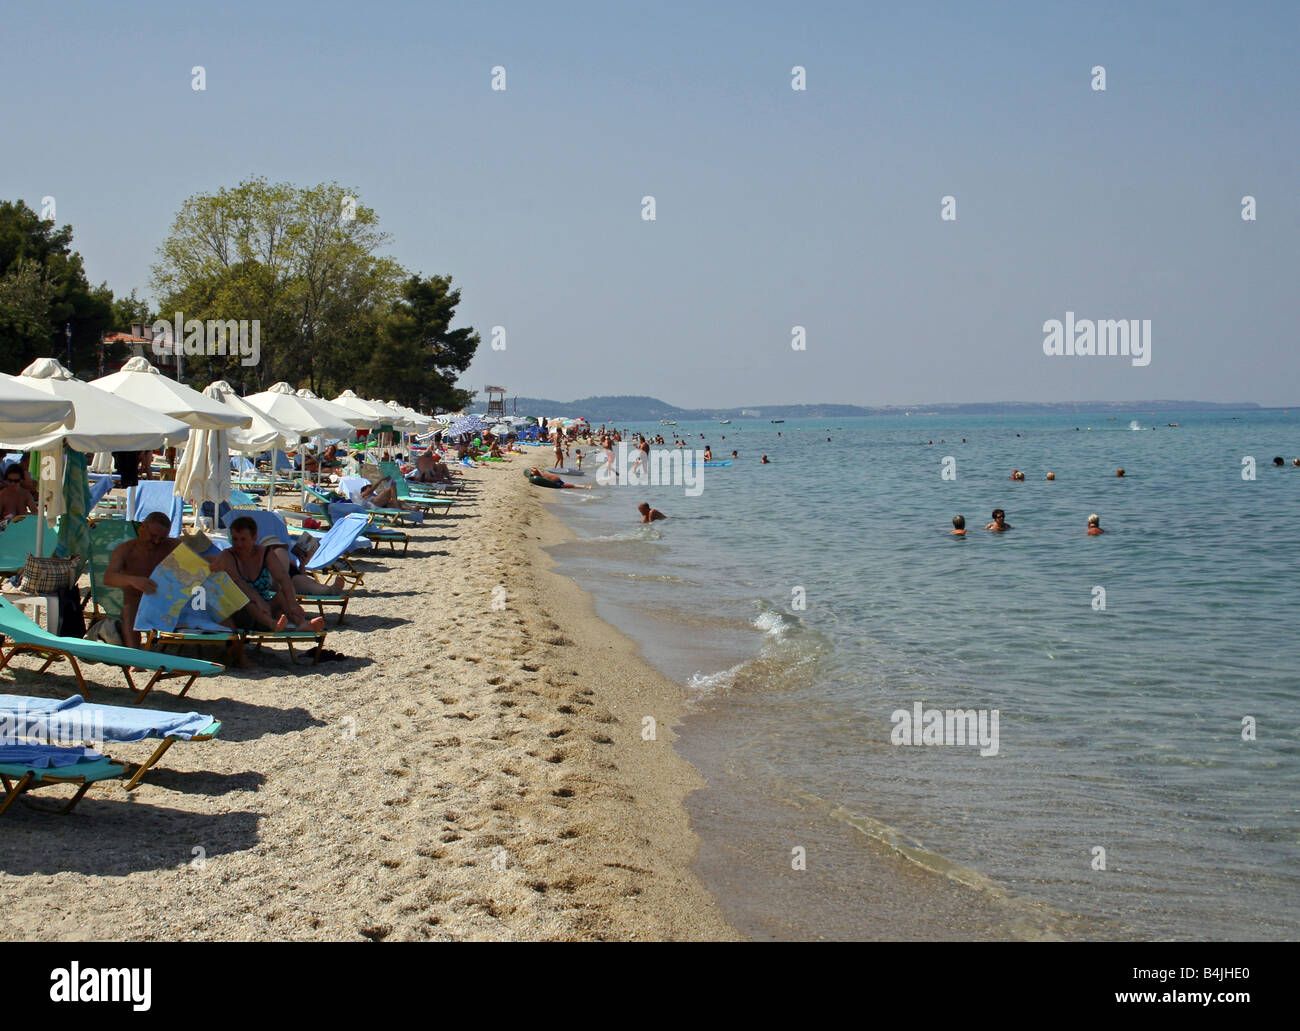 HANIOTI BEACH. KASSANDRA PENINSULA HALKIDIKI. GREECE Stock Photo